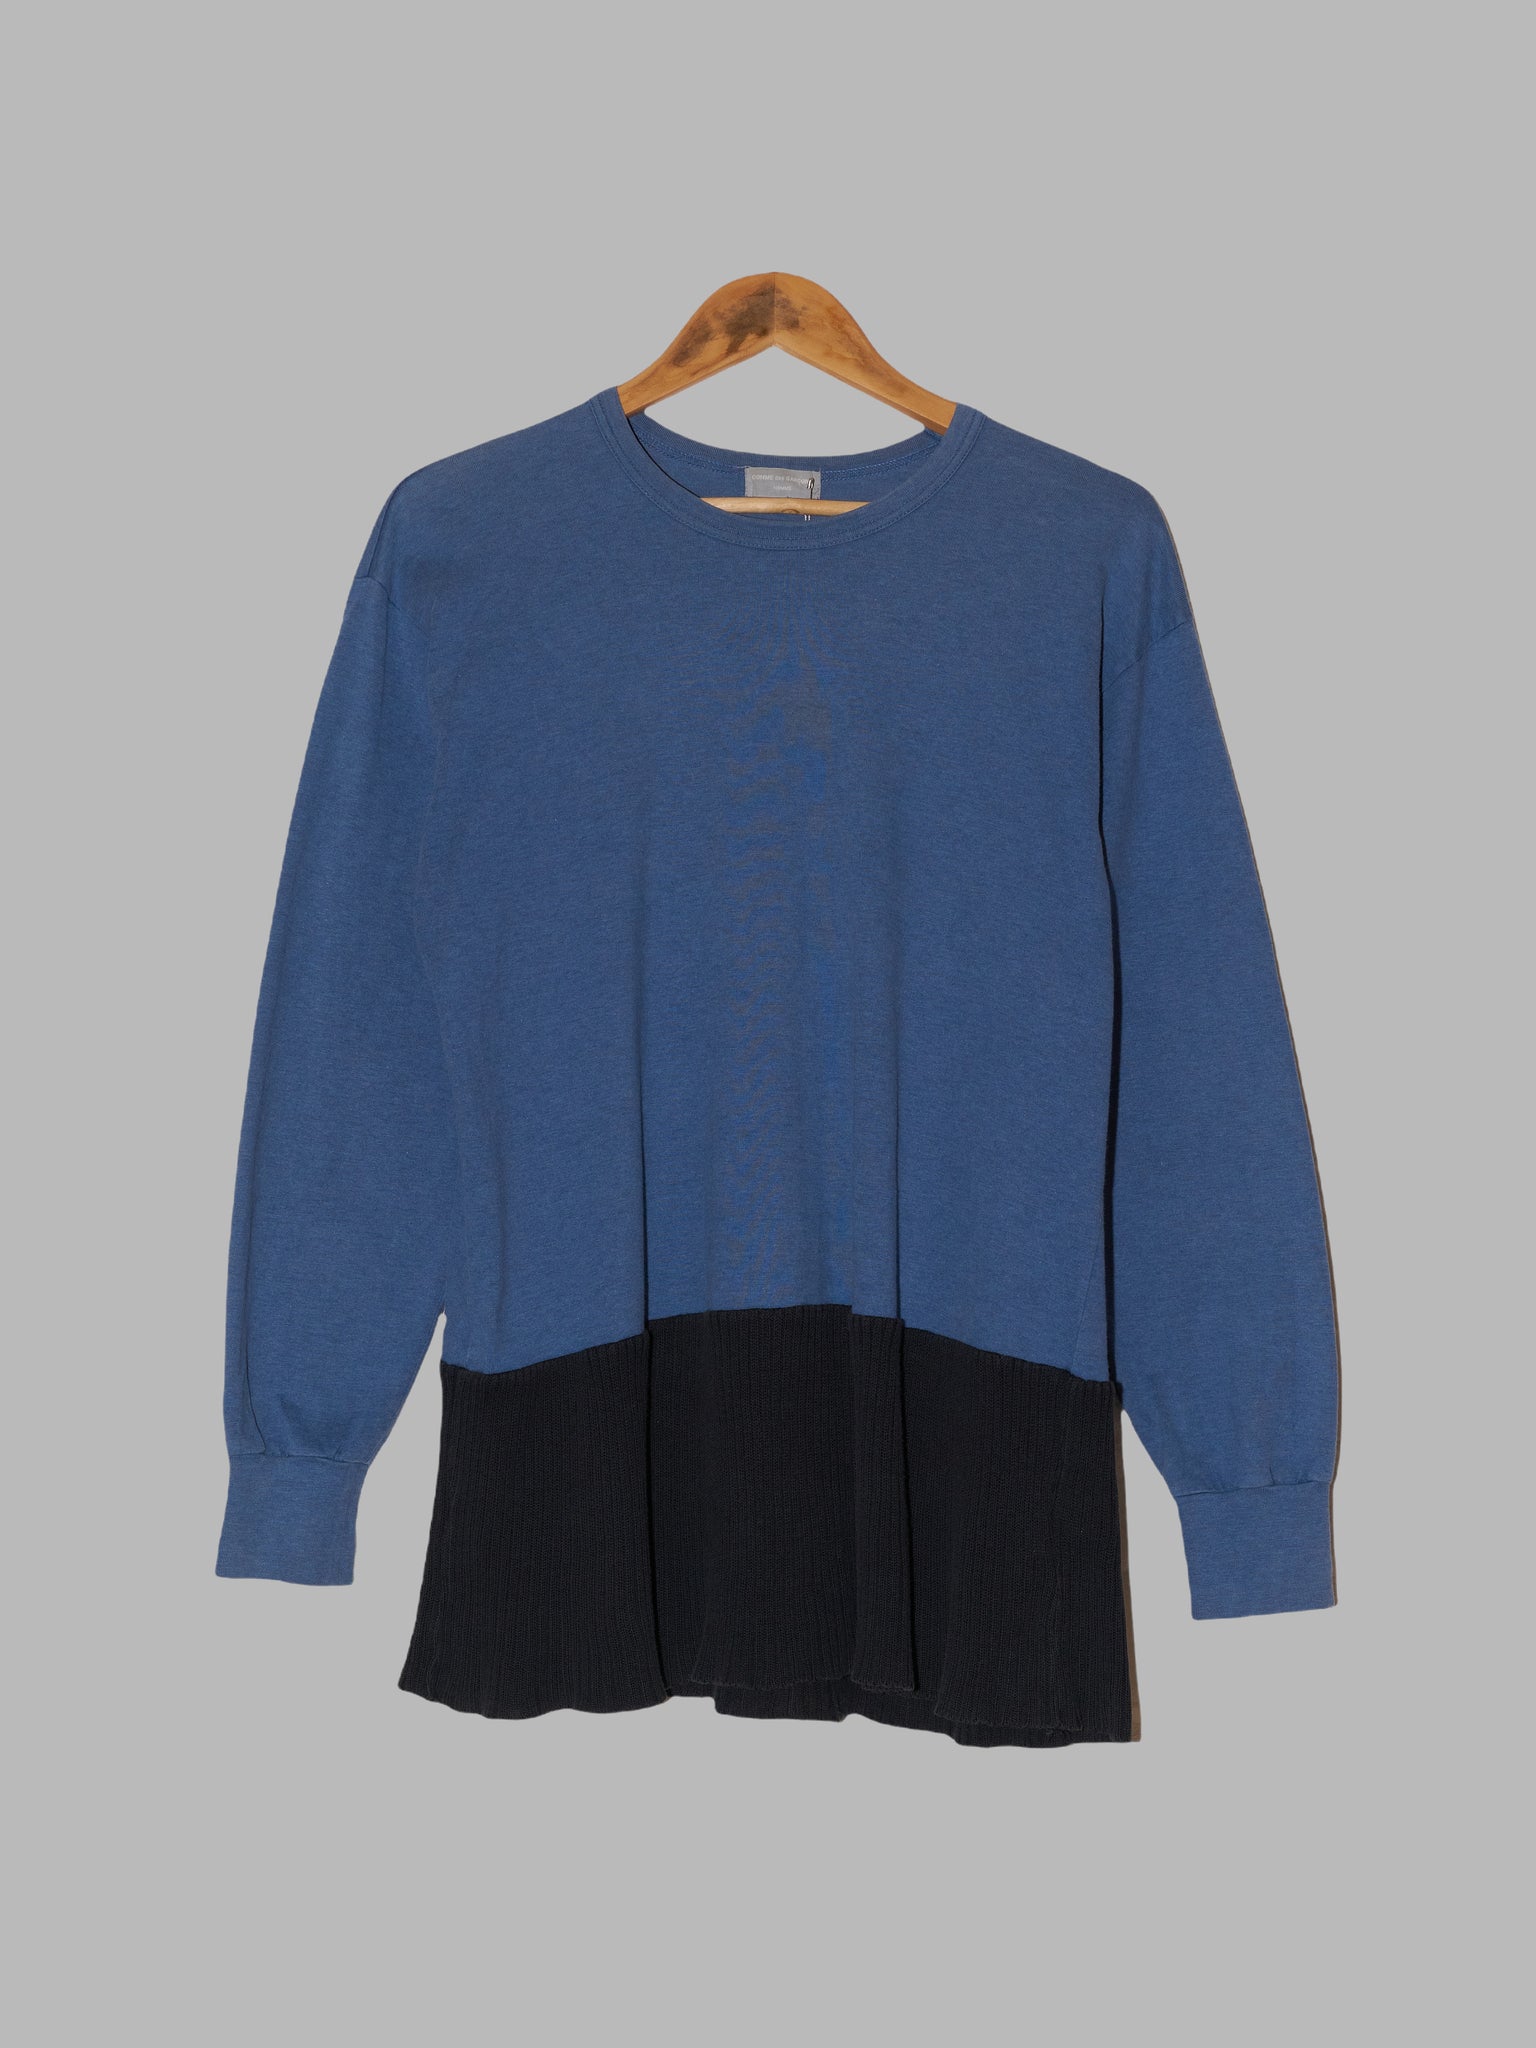 Comme des Garcons Homme 1994 blue cotton ribbed hem panel sweatshirt - S M